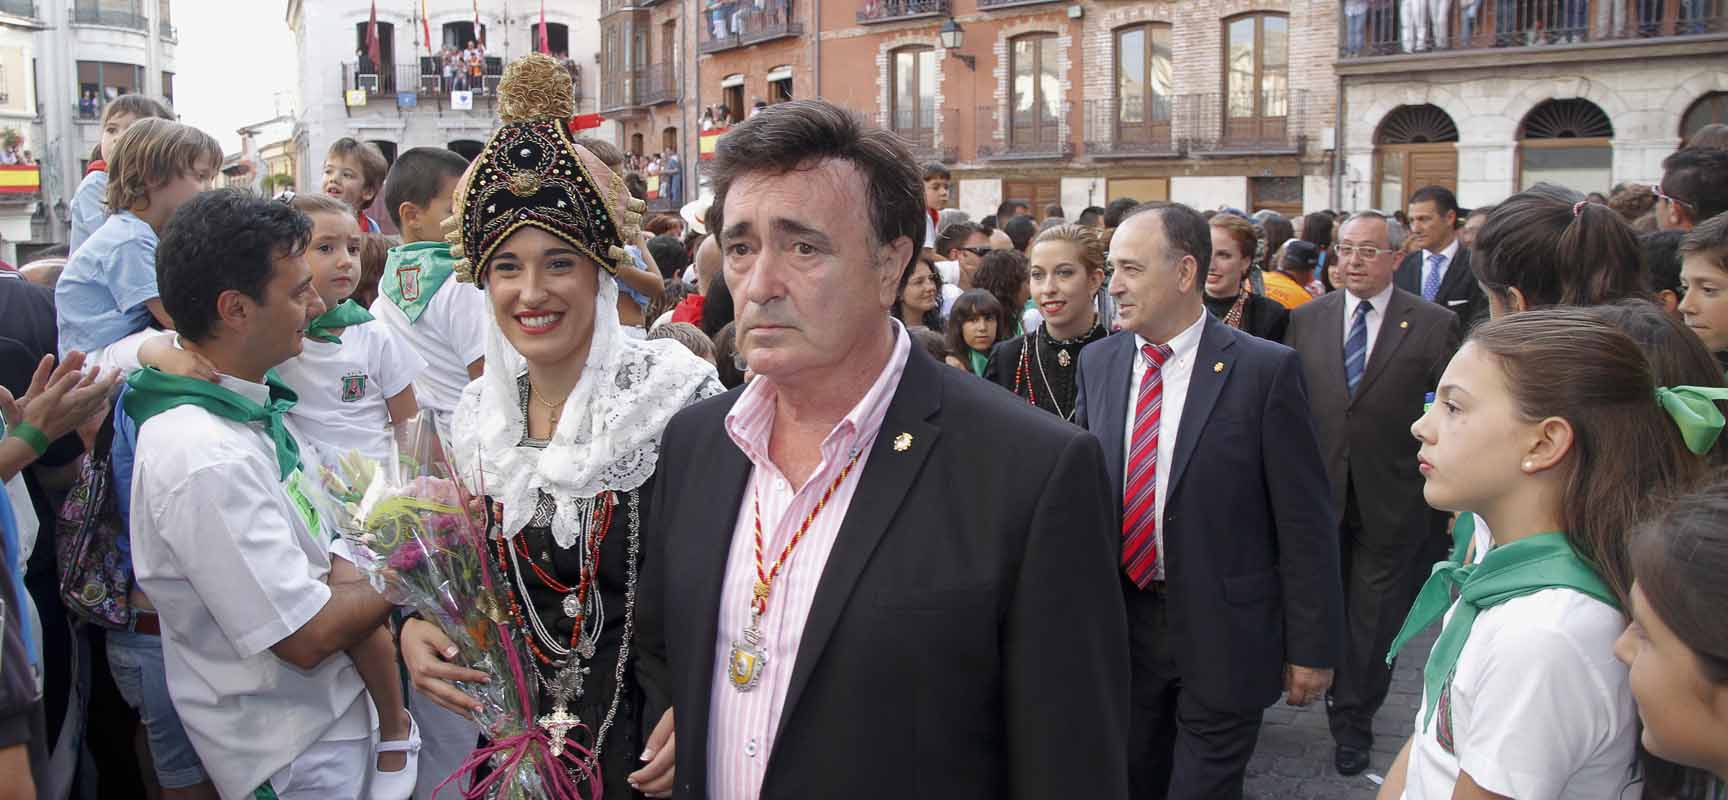 El alcalde, acompañado de la corporación y de la corregidora y damas, en la Plaza Mayor antes del pregón.